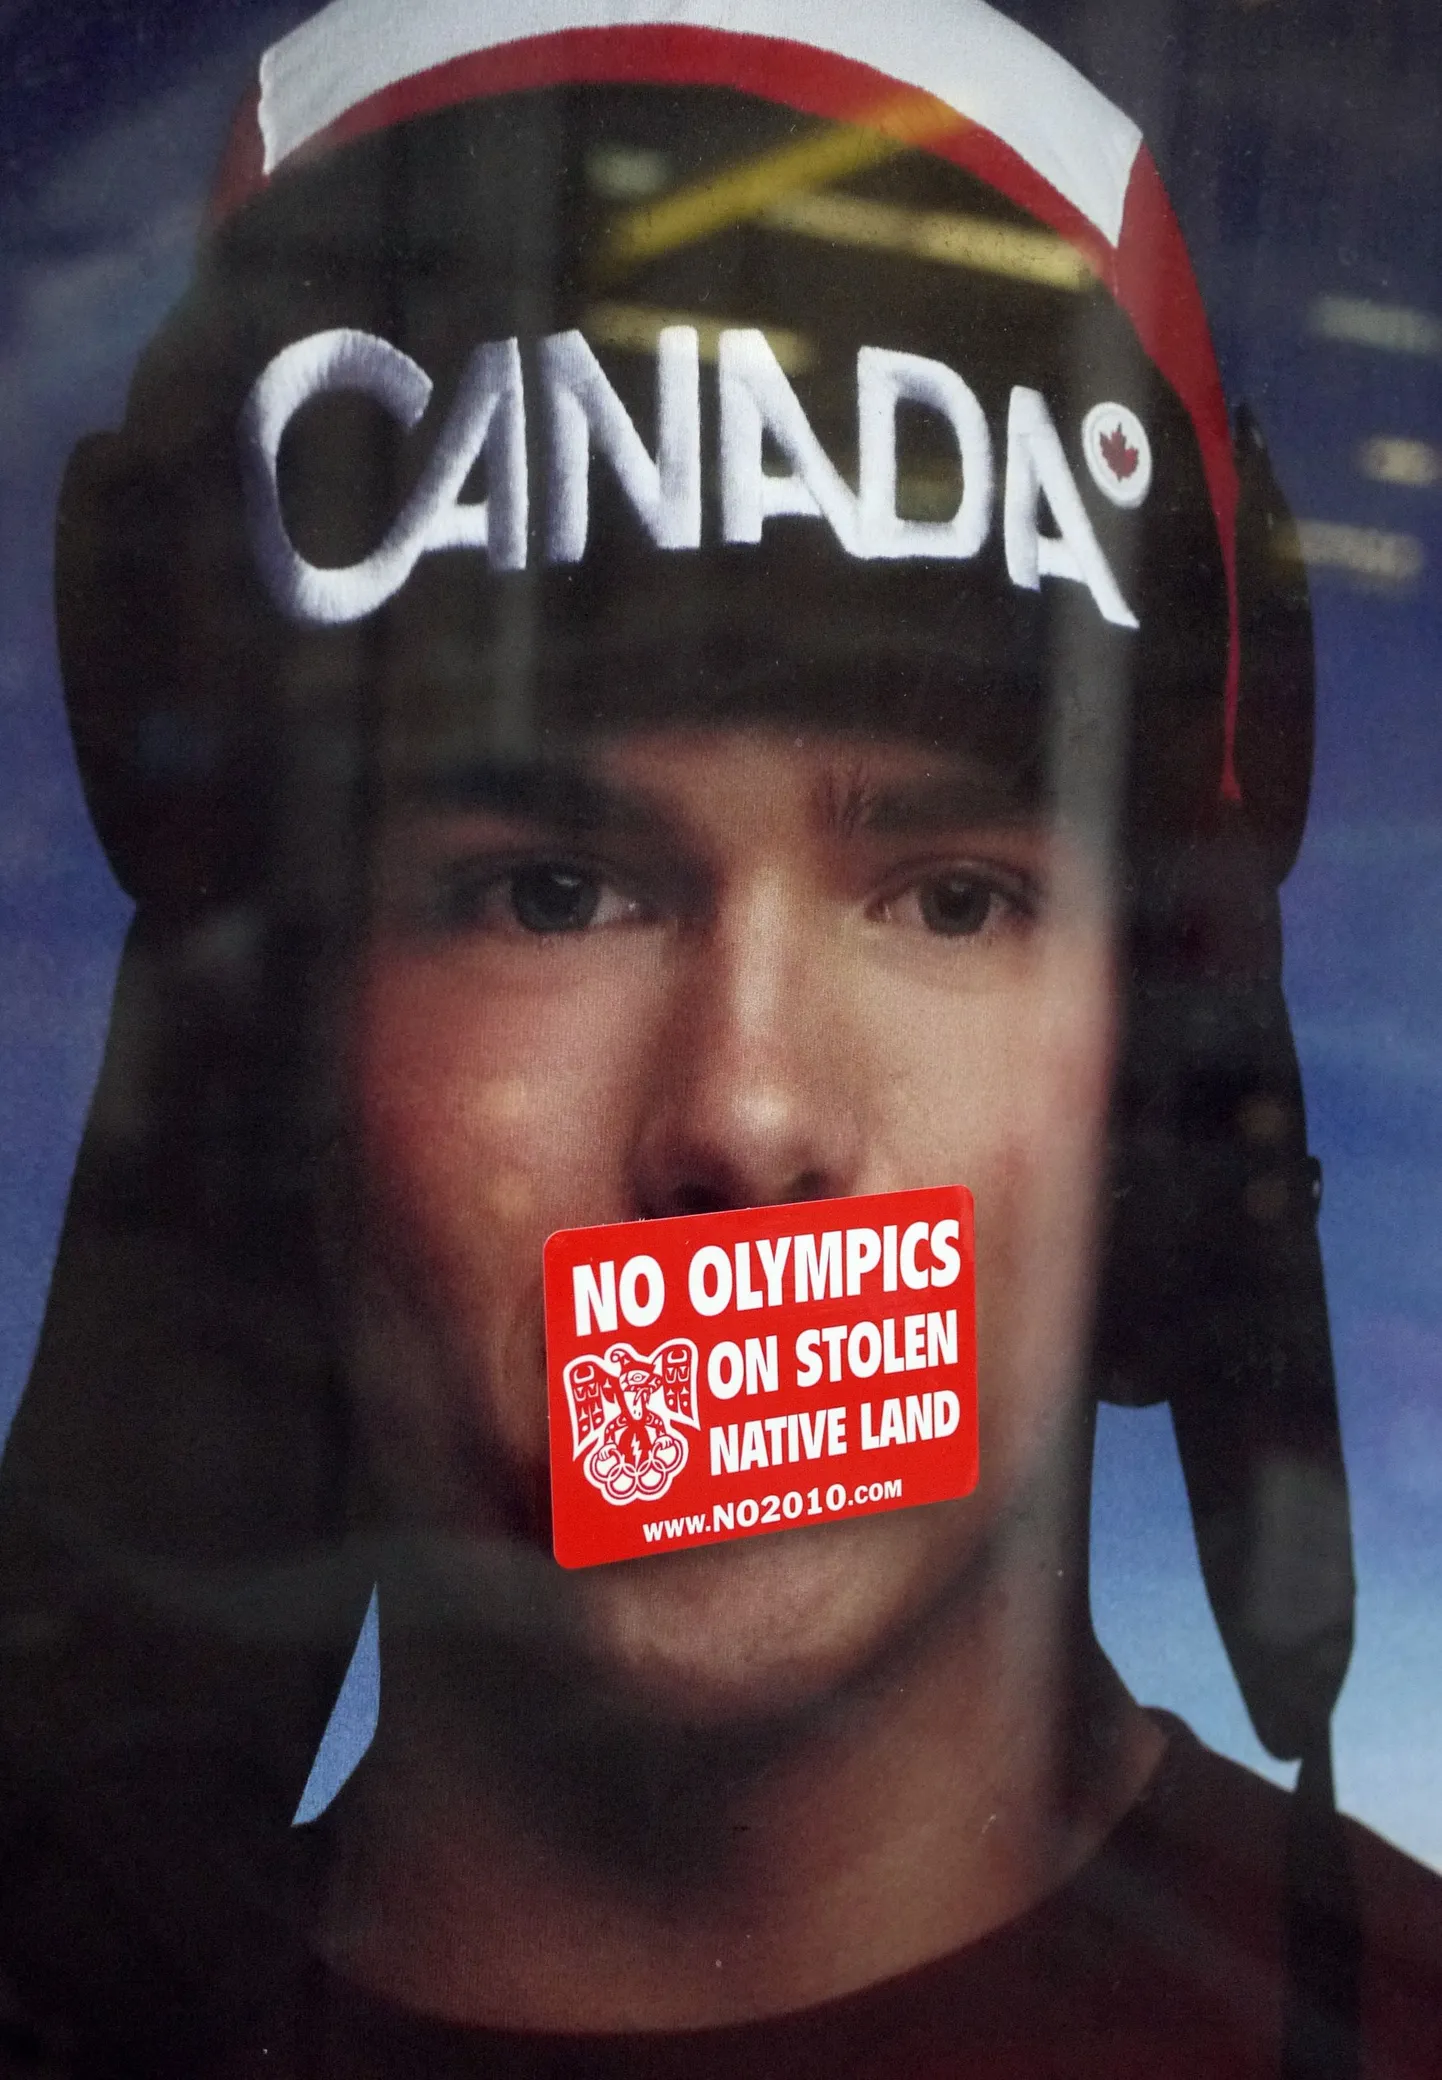 У всех своя мотивация протеста: "Никакой Олимпиады на украденной родной земле!" - гласит этот плакат на автобусной остановке в Ванкувере.